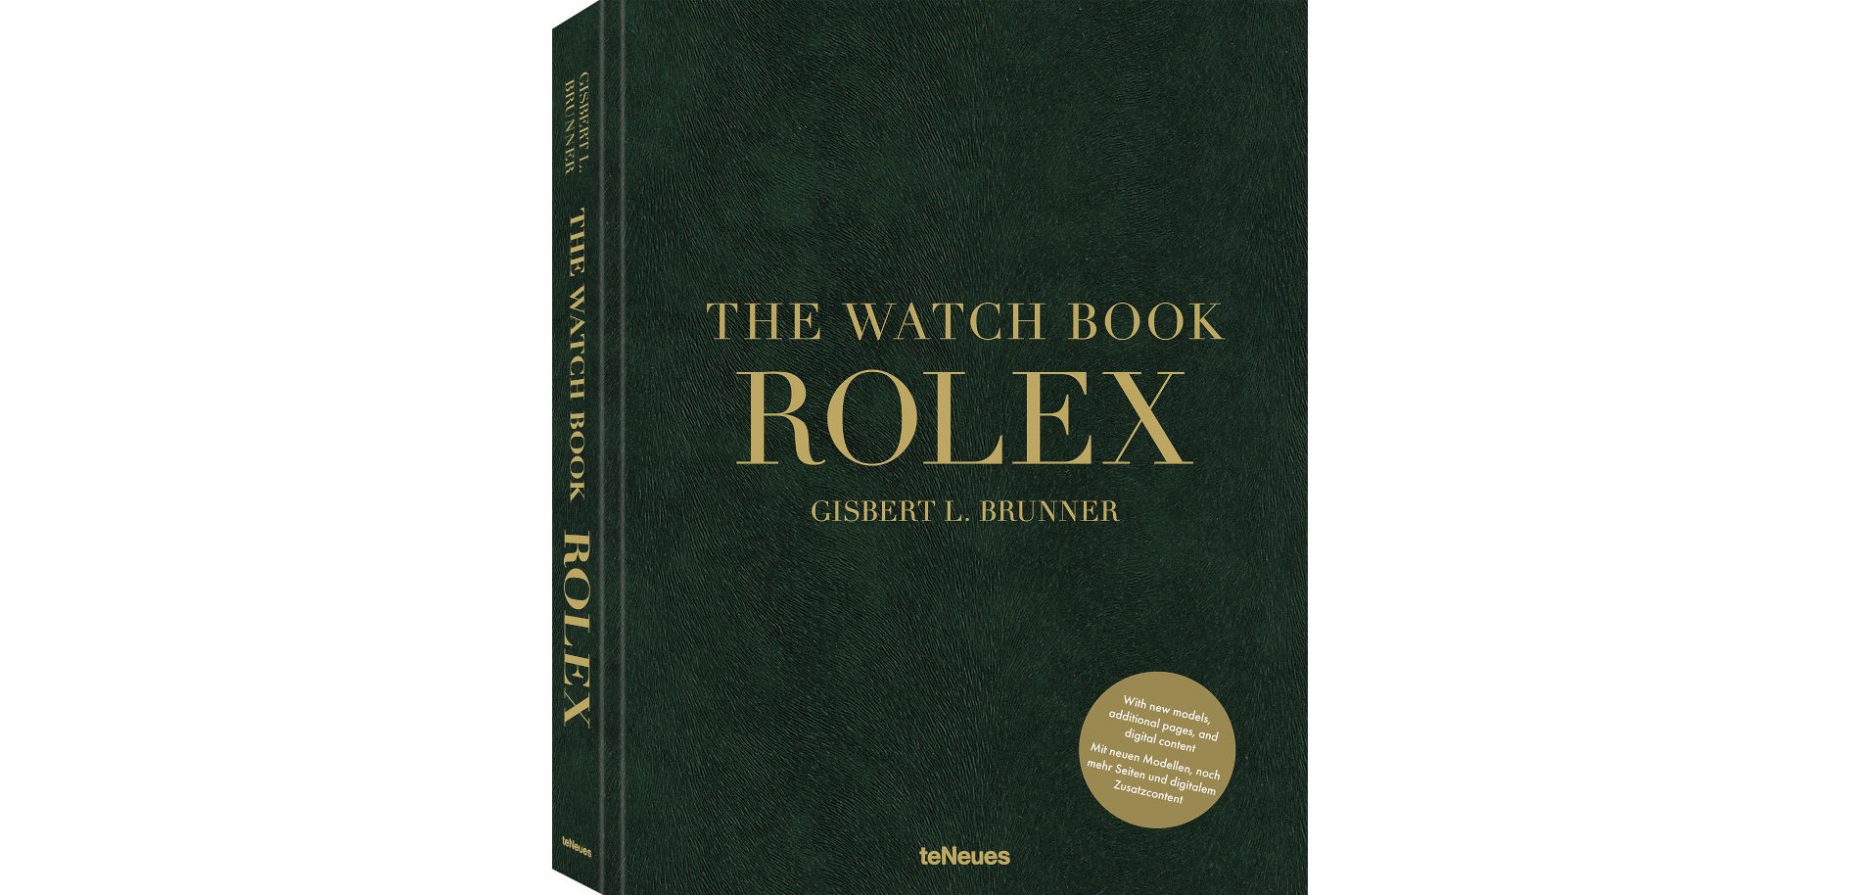 Gisbert L. Brunners The Watch Book Rolex ist soeben in 3. Auflage bei teNeues erschienen. Wir verraten, ob sich die Anschaffung des Coffee-Table-Bestsellers lohnt.